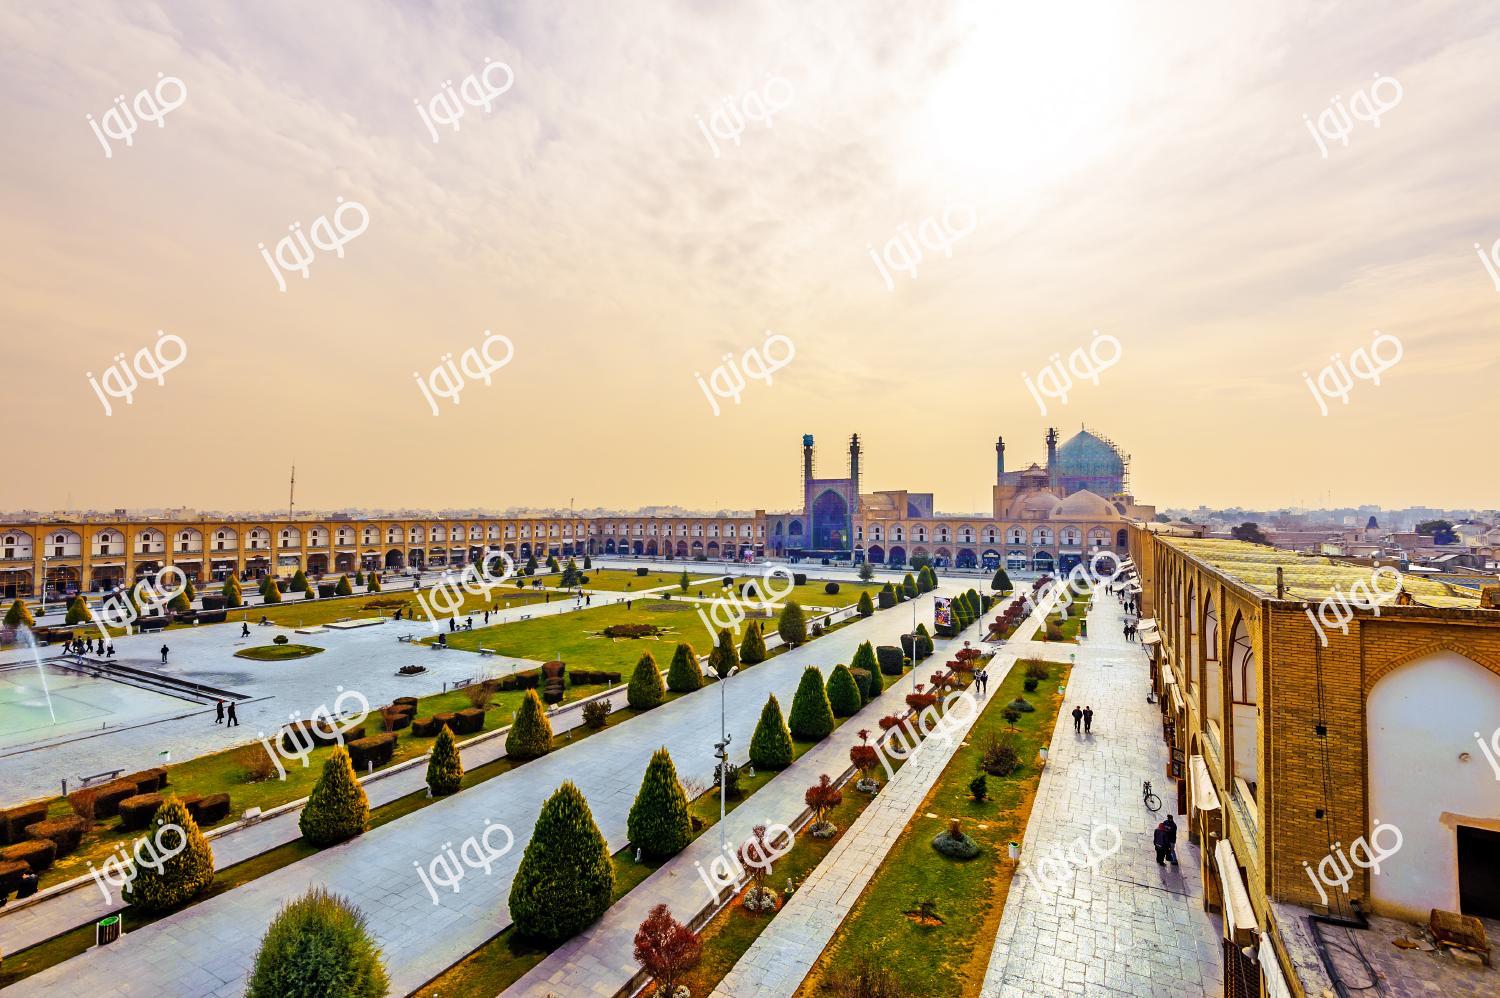 عکس با کیفیت بالا از اصفهان